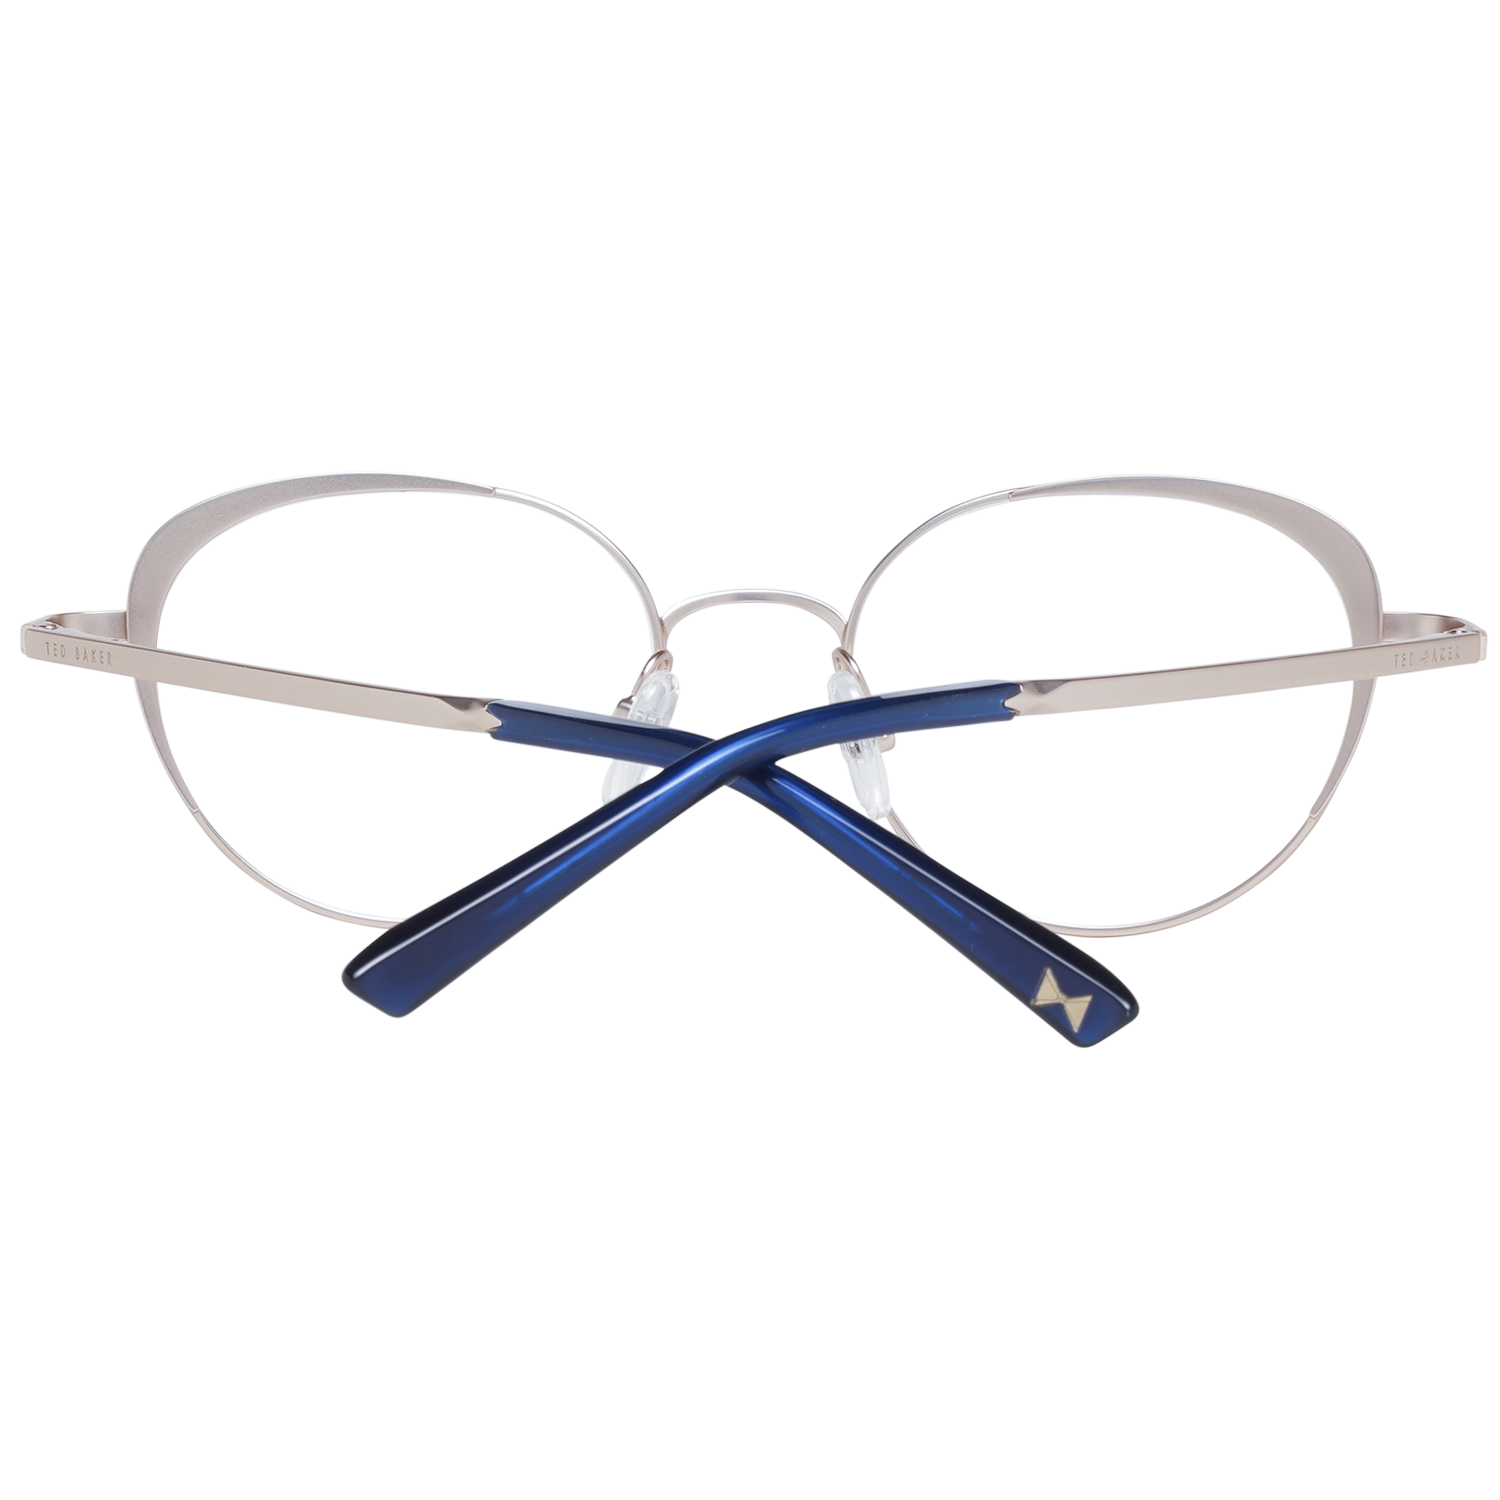 Ted Baker Frames Ted Baker Optical Frame Prescription Glasses TB2274 689 48 Eyeglasses Eyewear UK USA Australia 